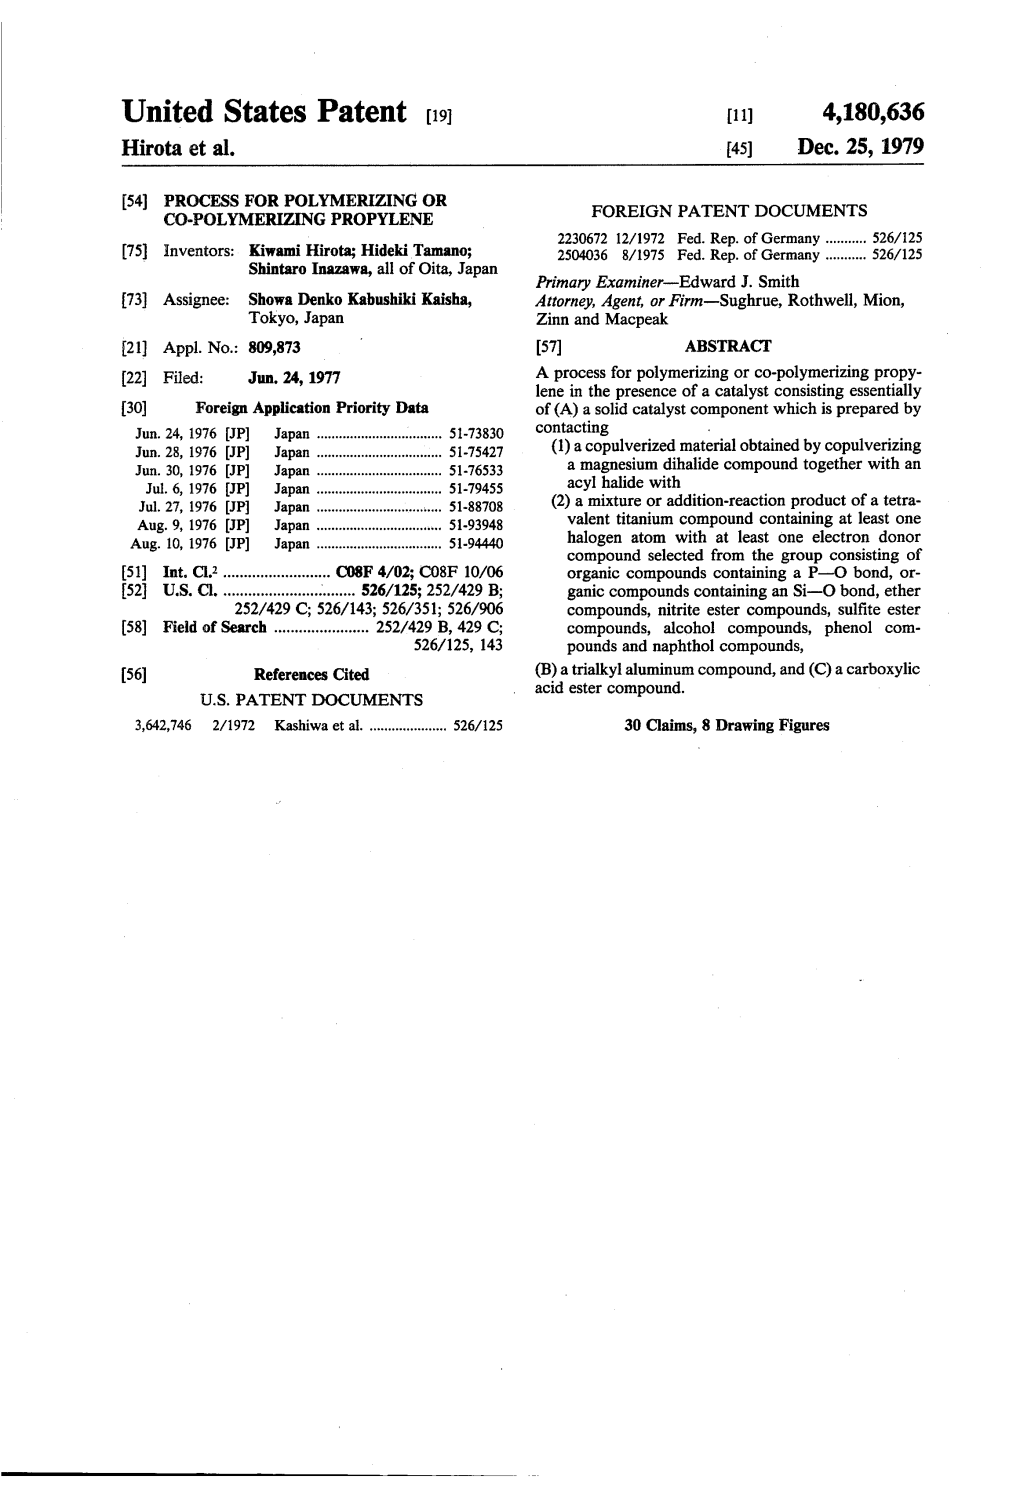 United States Patent (19) 11) 4,180,636 Hirota Et Al